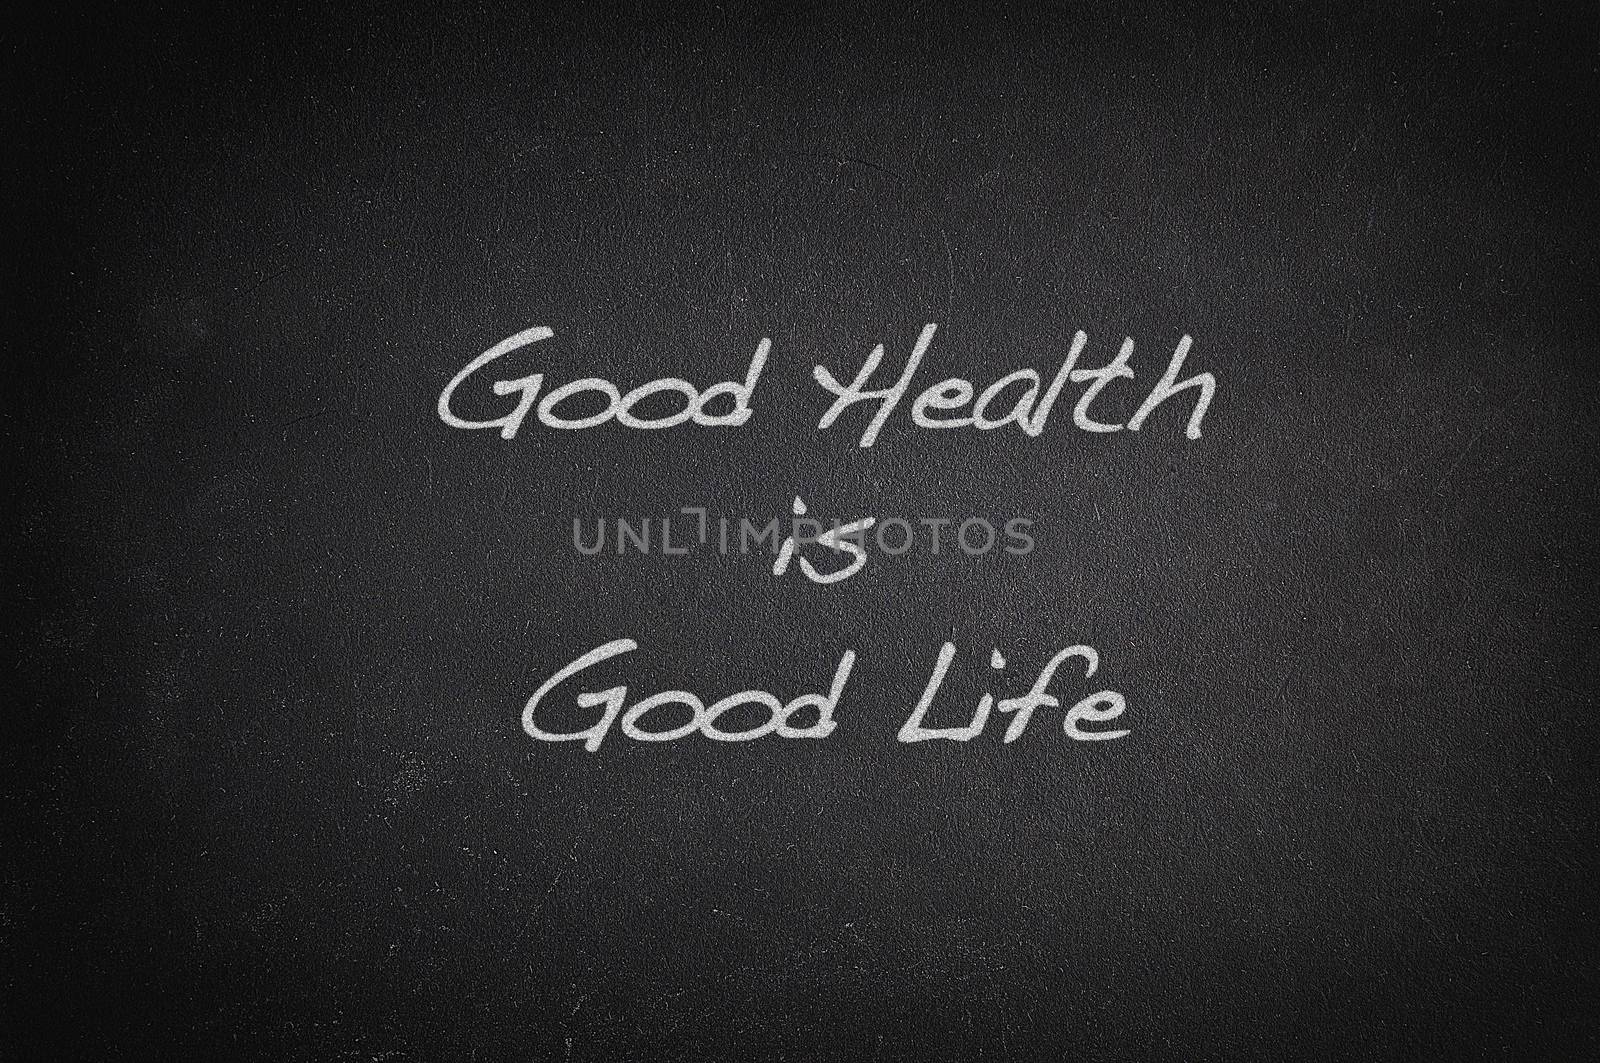 Good health, good life. by CreativePhotoSpain